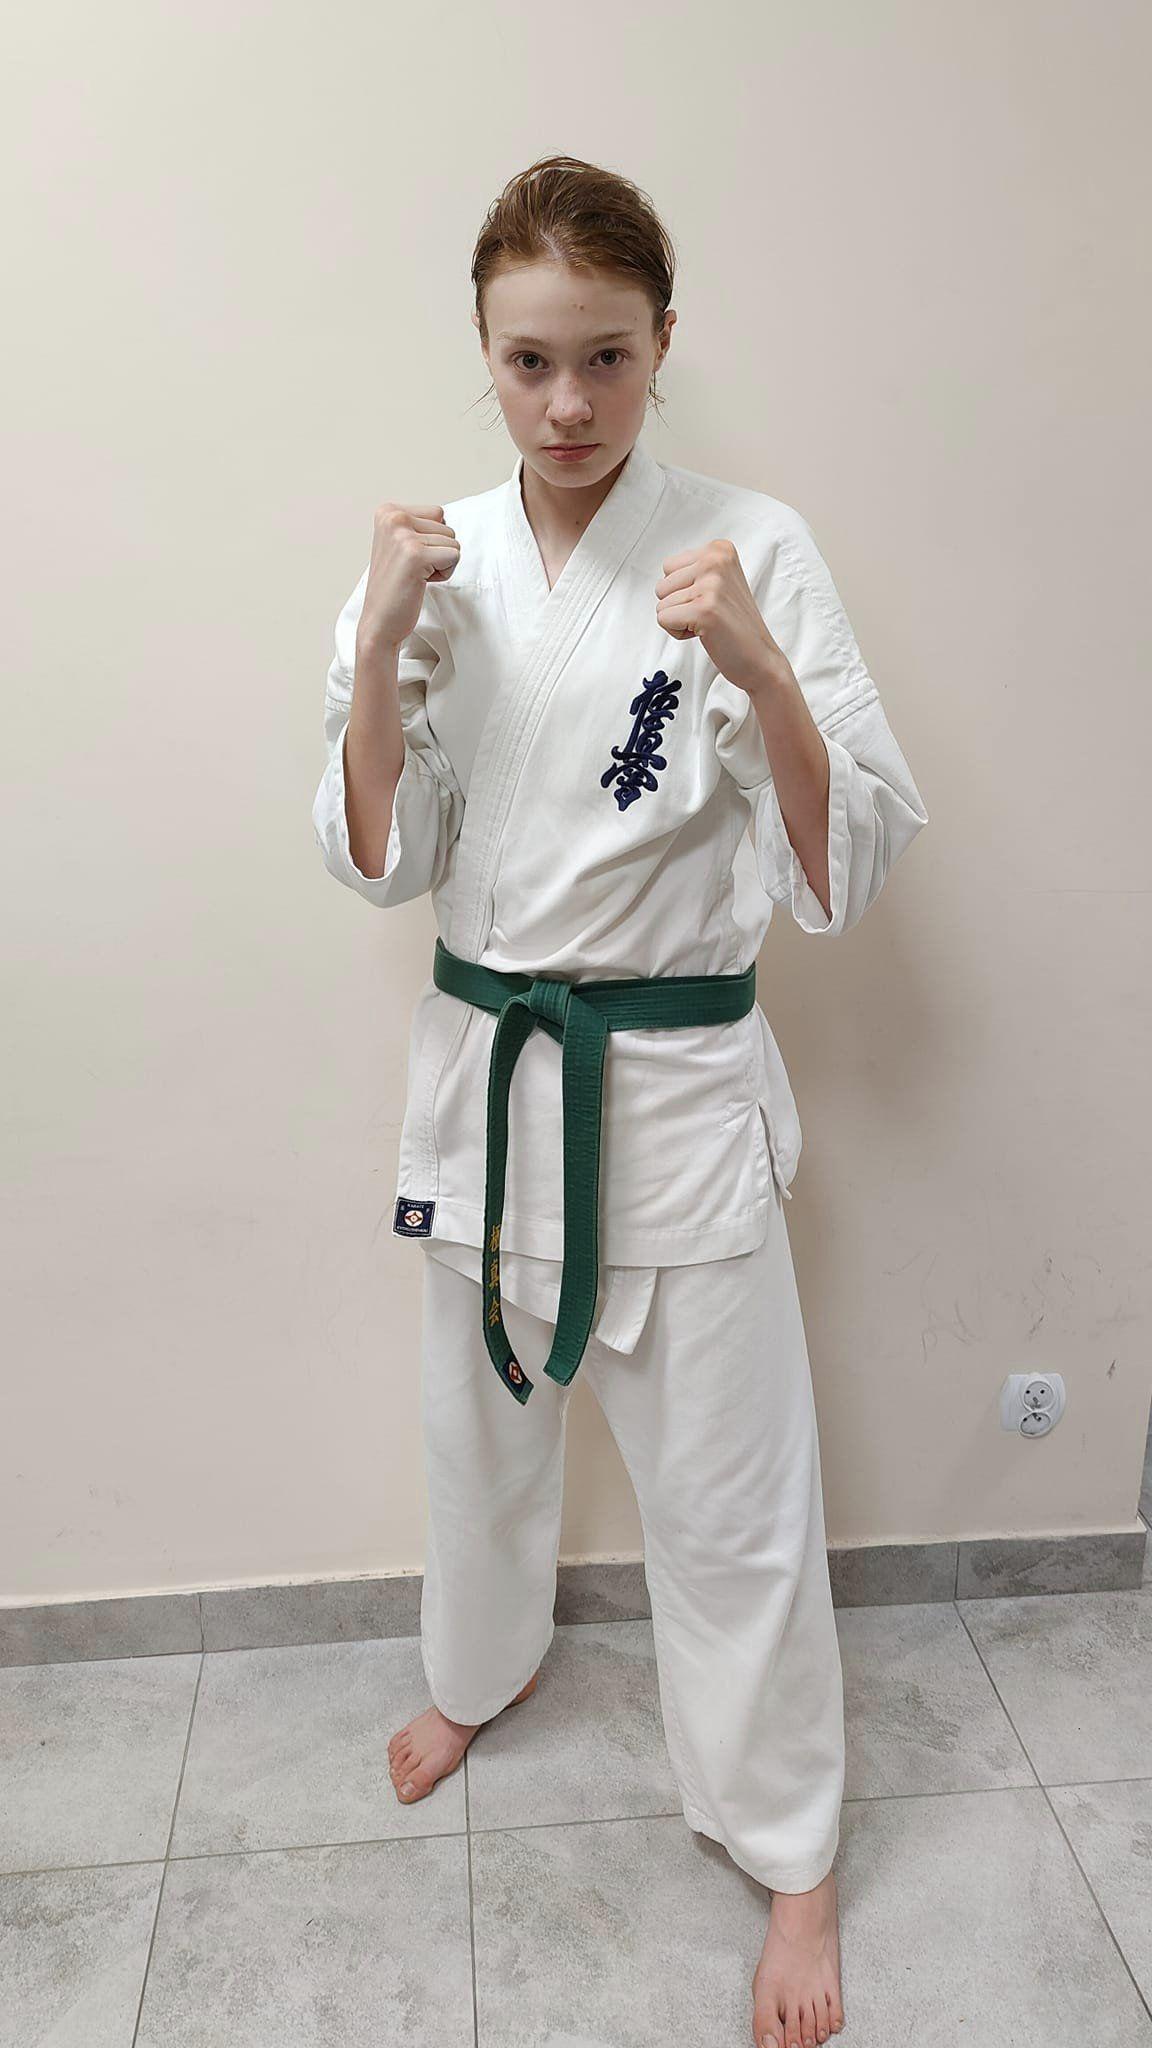 Zdj. nr. 3. Reprezentantki Polski na Mistrzostwach Świata w Karate Kyokushin 